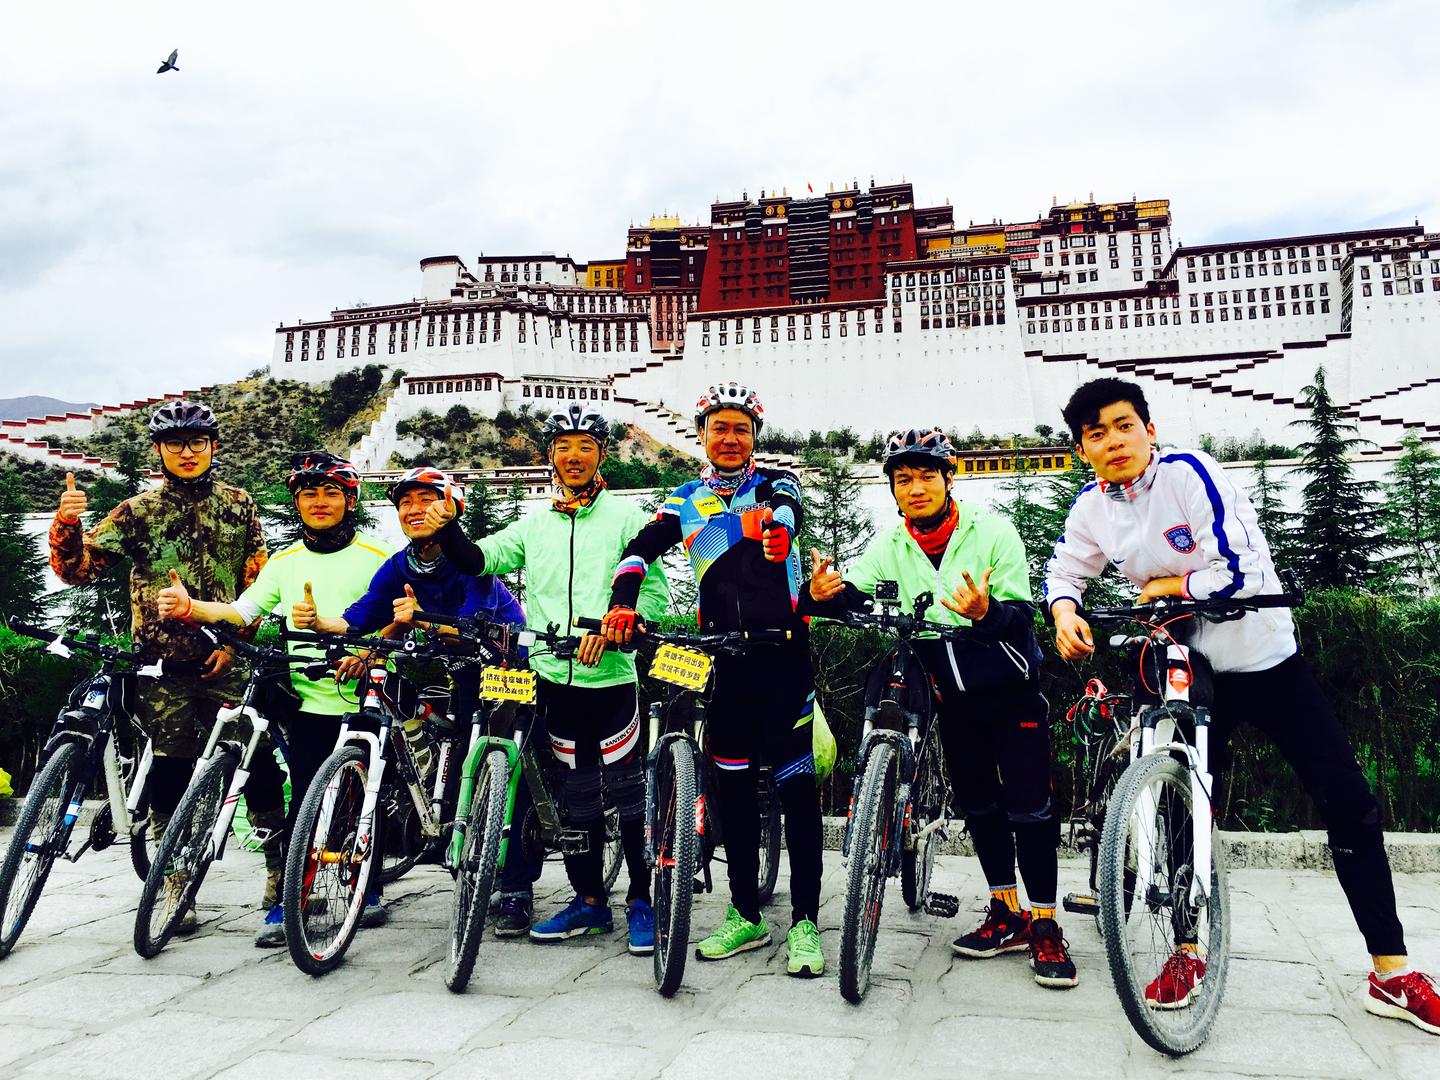 西藏 | 骑行川藏四千里:2012年的青春影像 - 罗磊的独立博客